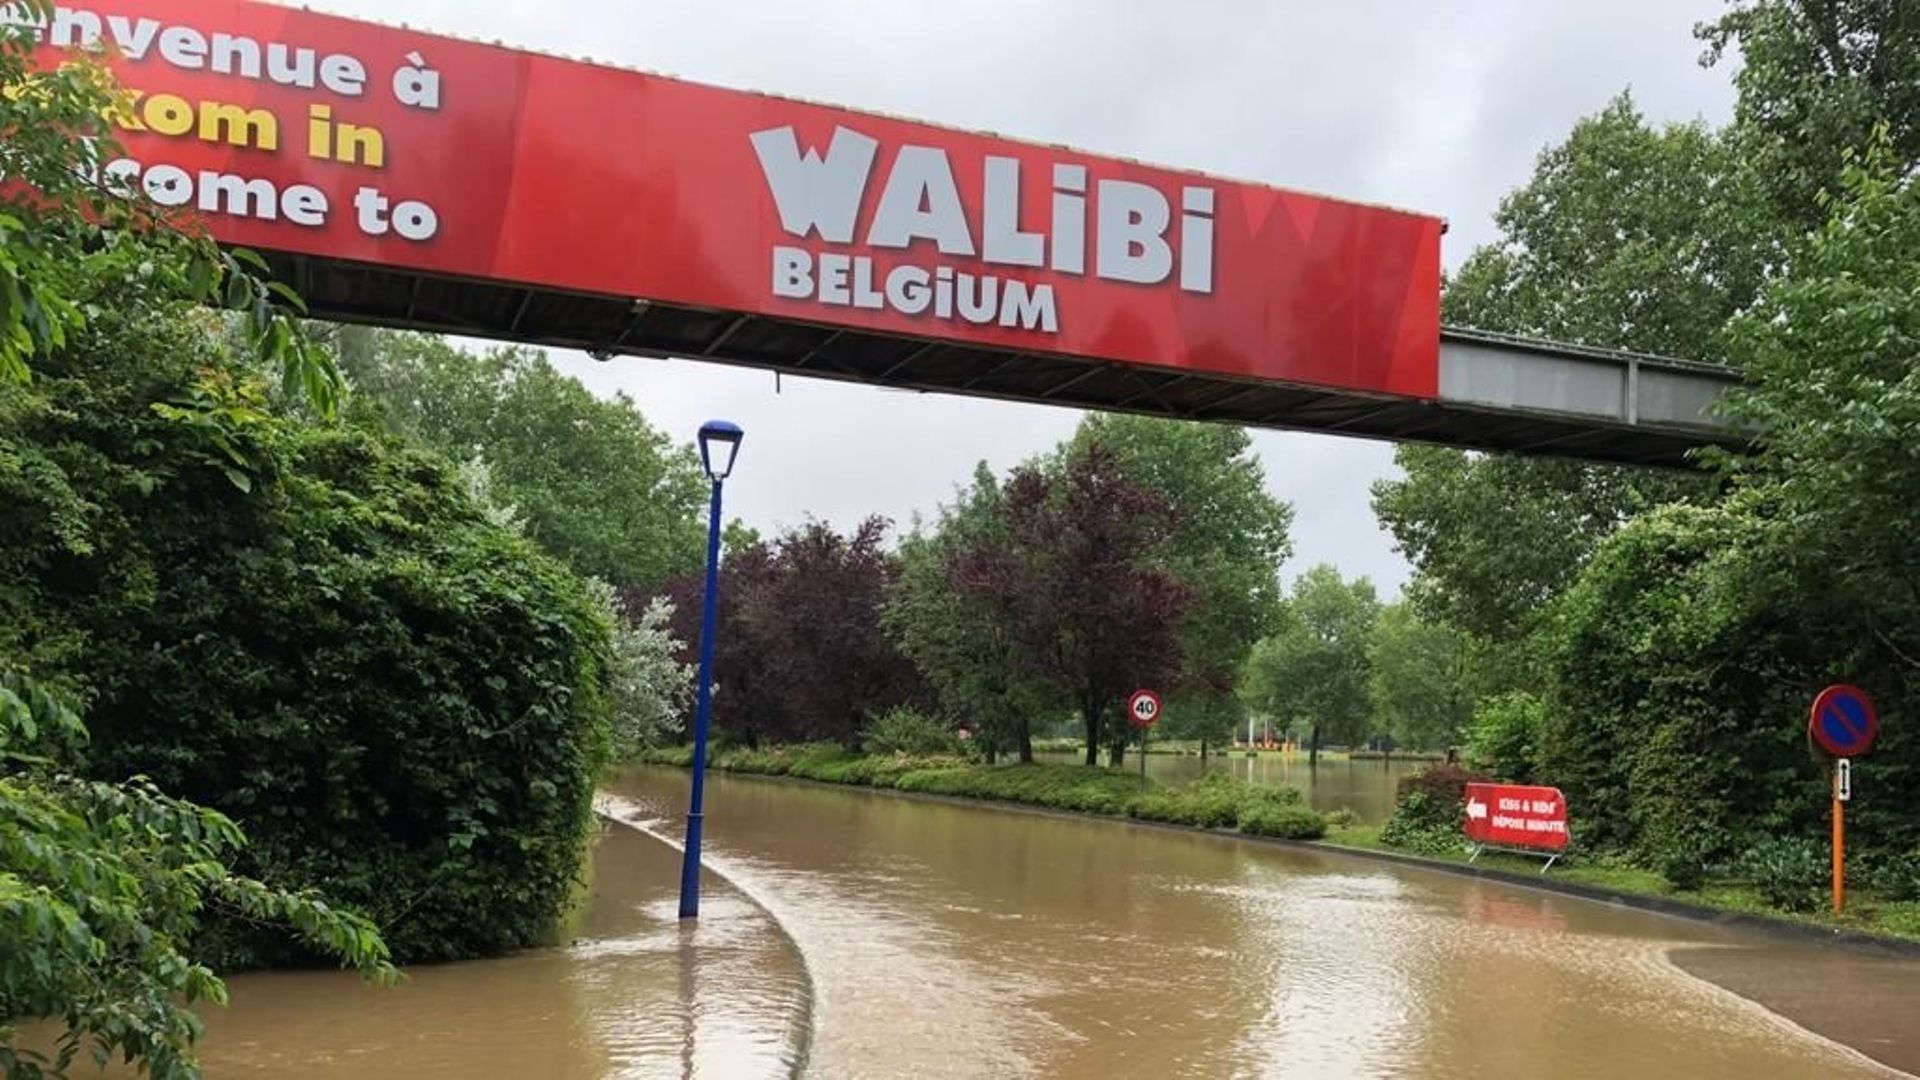 Walibi lors des inondations de juillet 2021